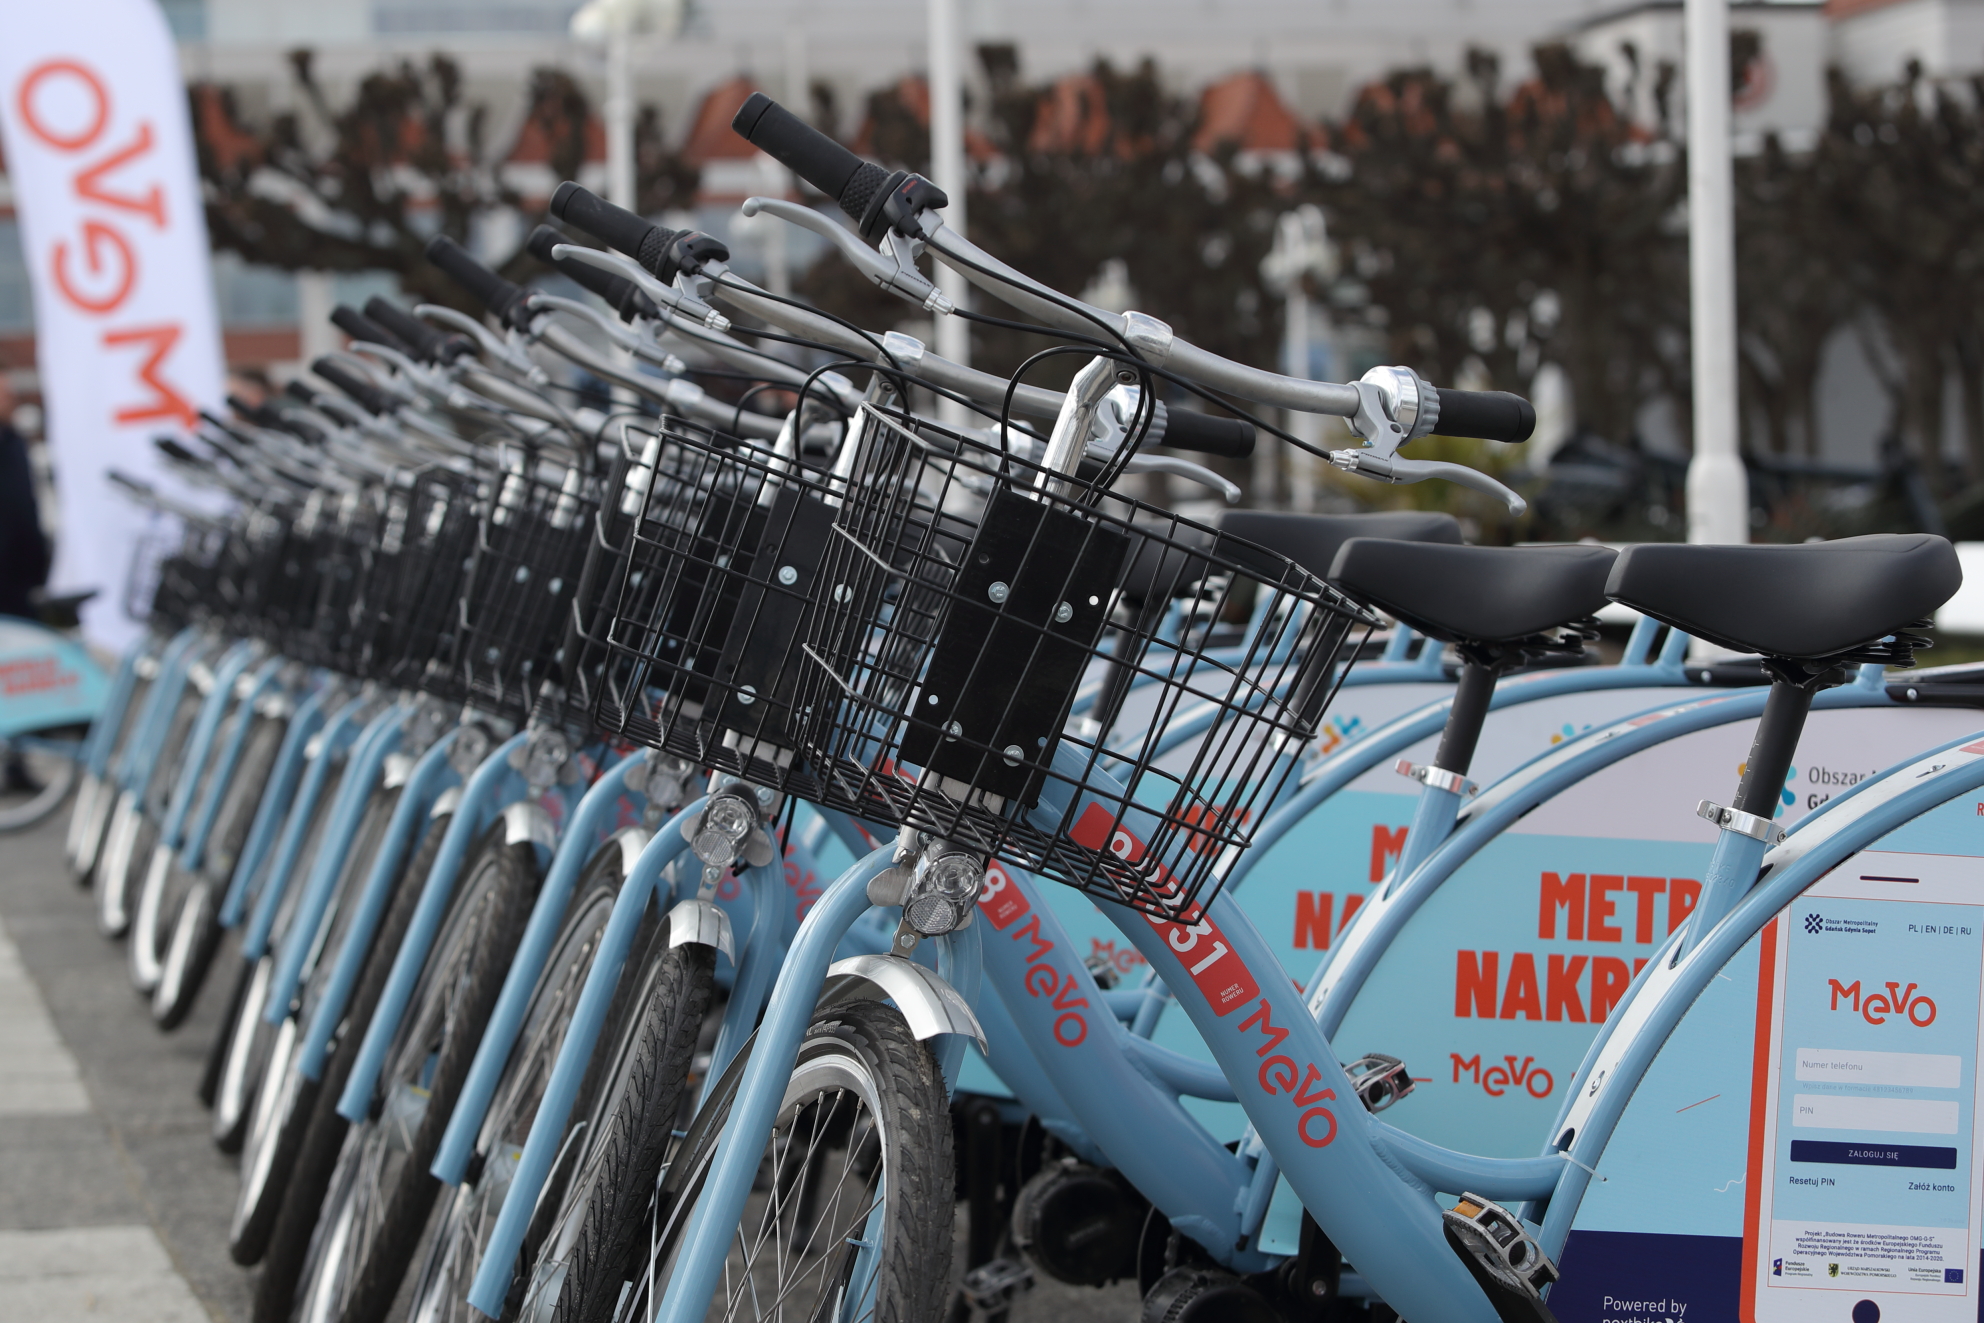 KOMUNIKAT PRASOWY – Zmiany w systemie rezerwacji rowerów Mevo!